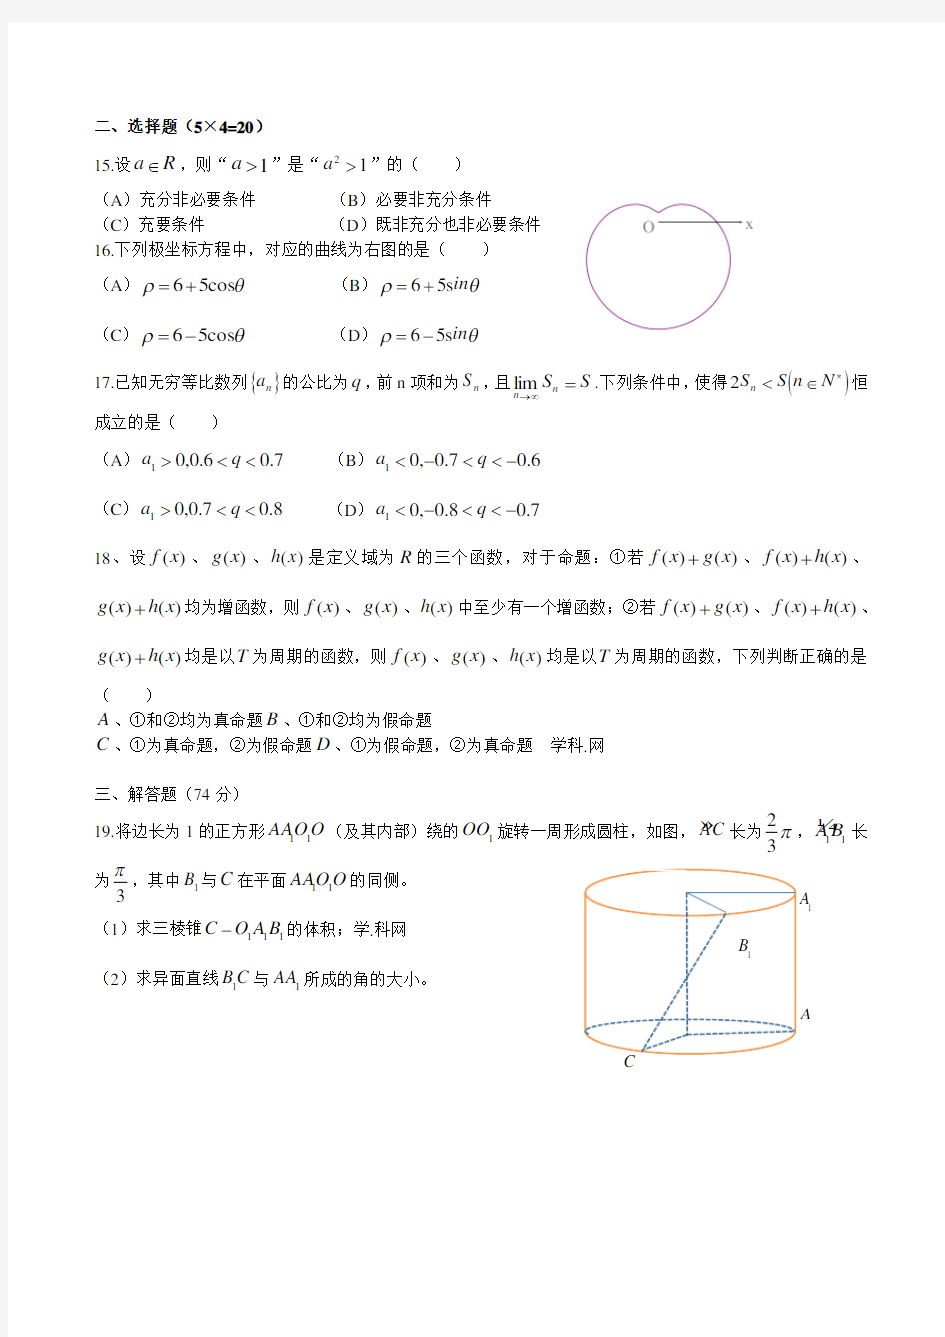 2016年上海市高考理科数学试题及答案